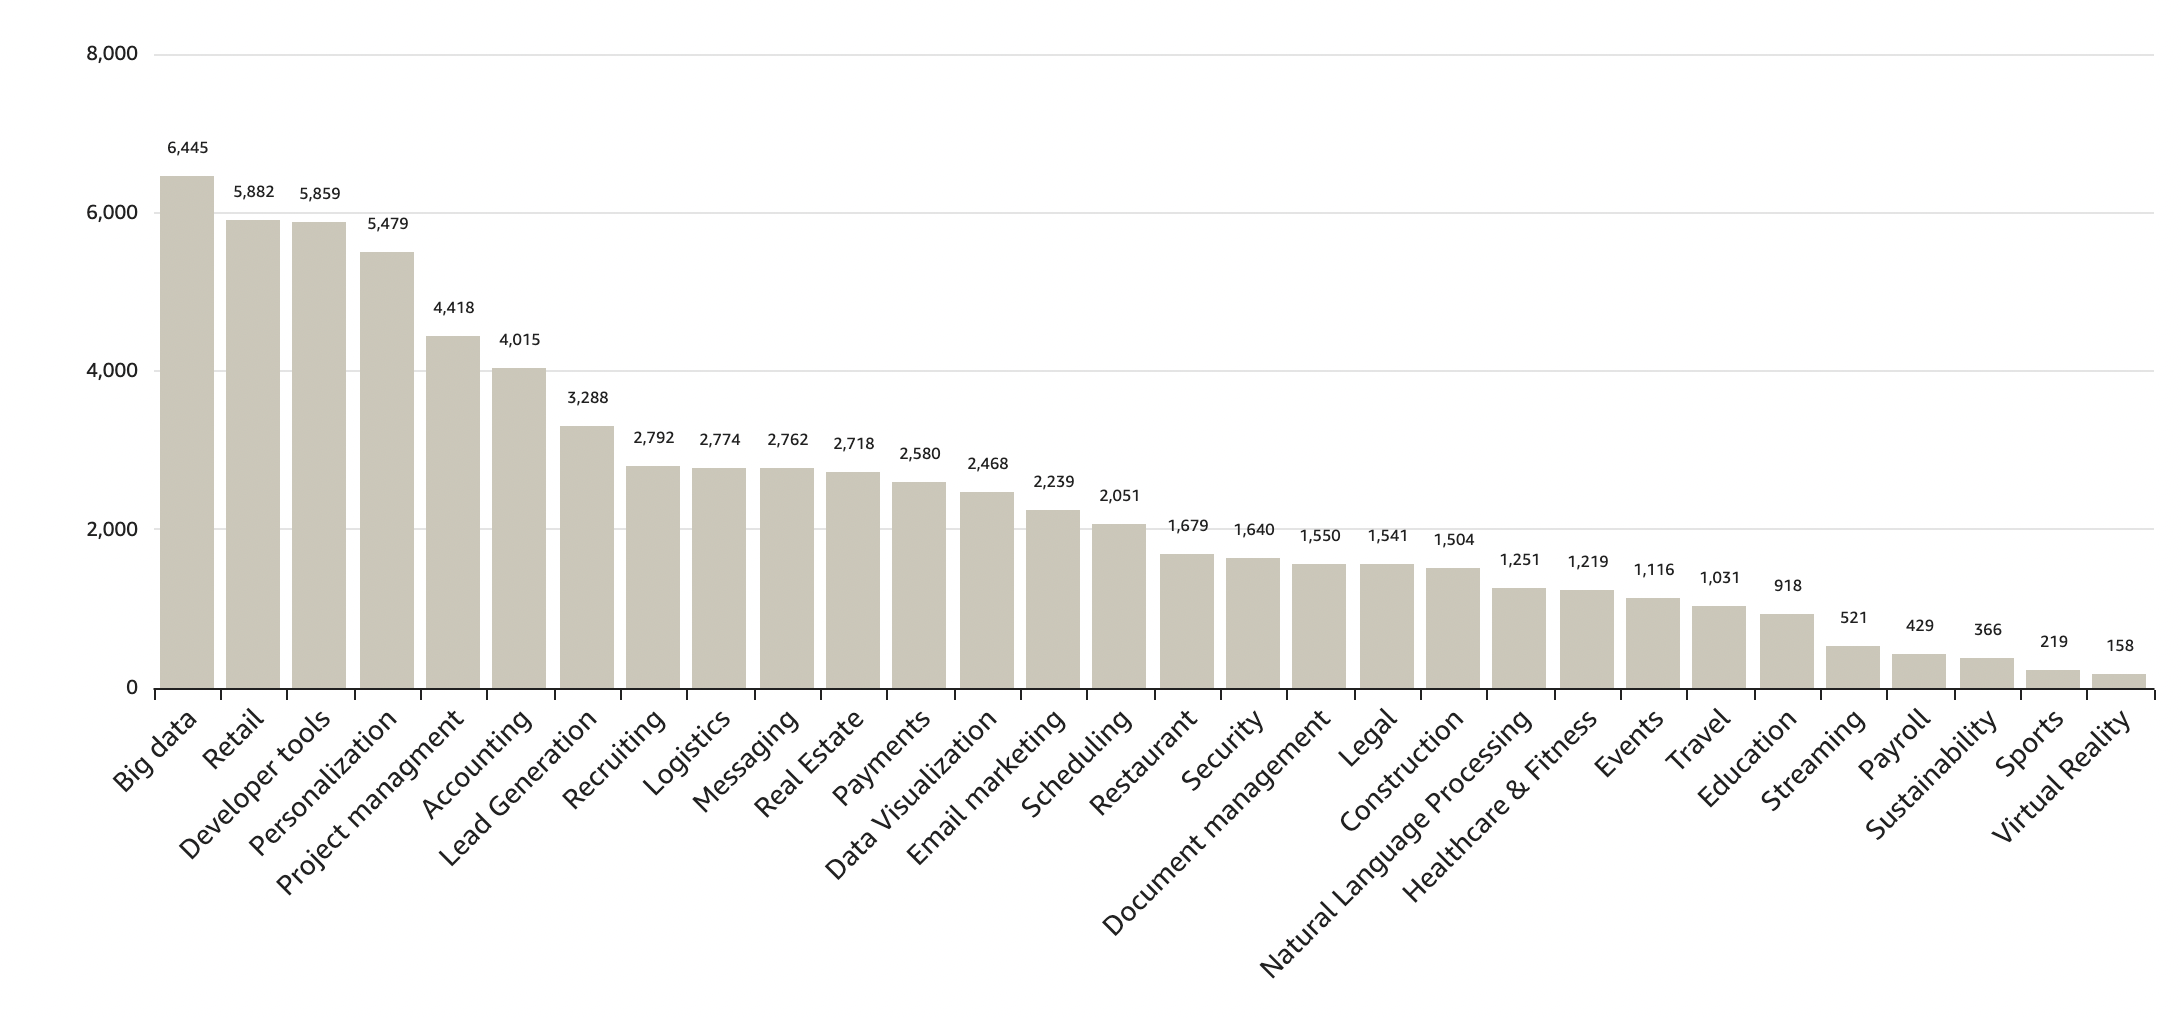 Number of SaaS companies per industry vertical